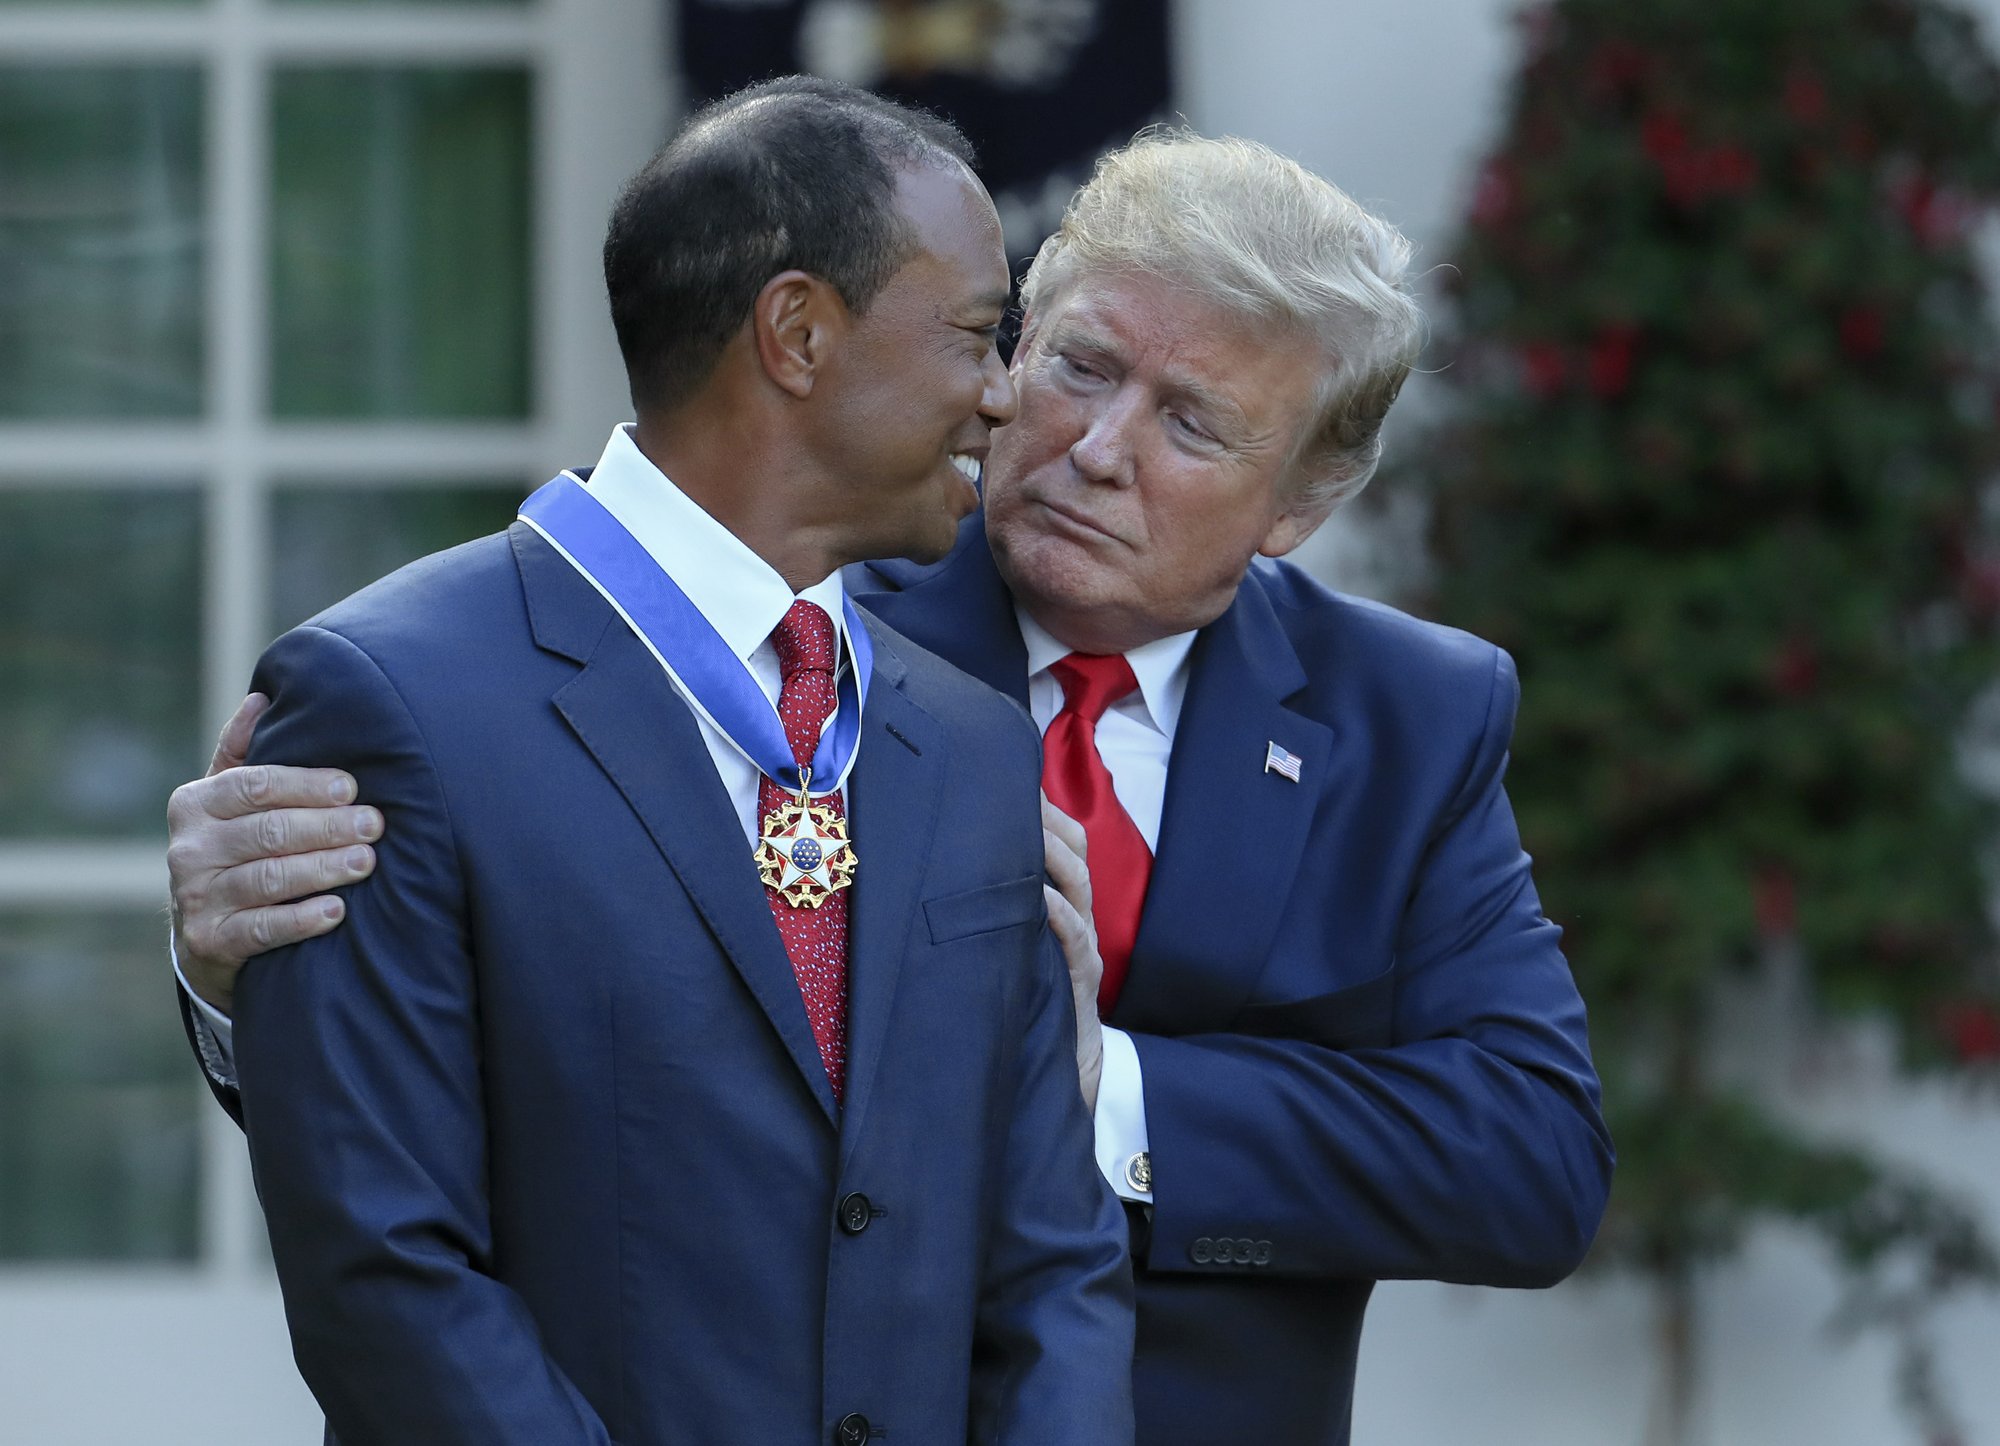 Trump awards medal to Tiger Woods, calls him ‘true legend’